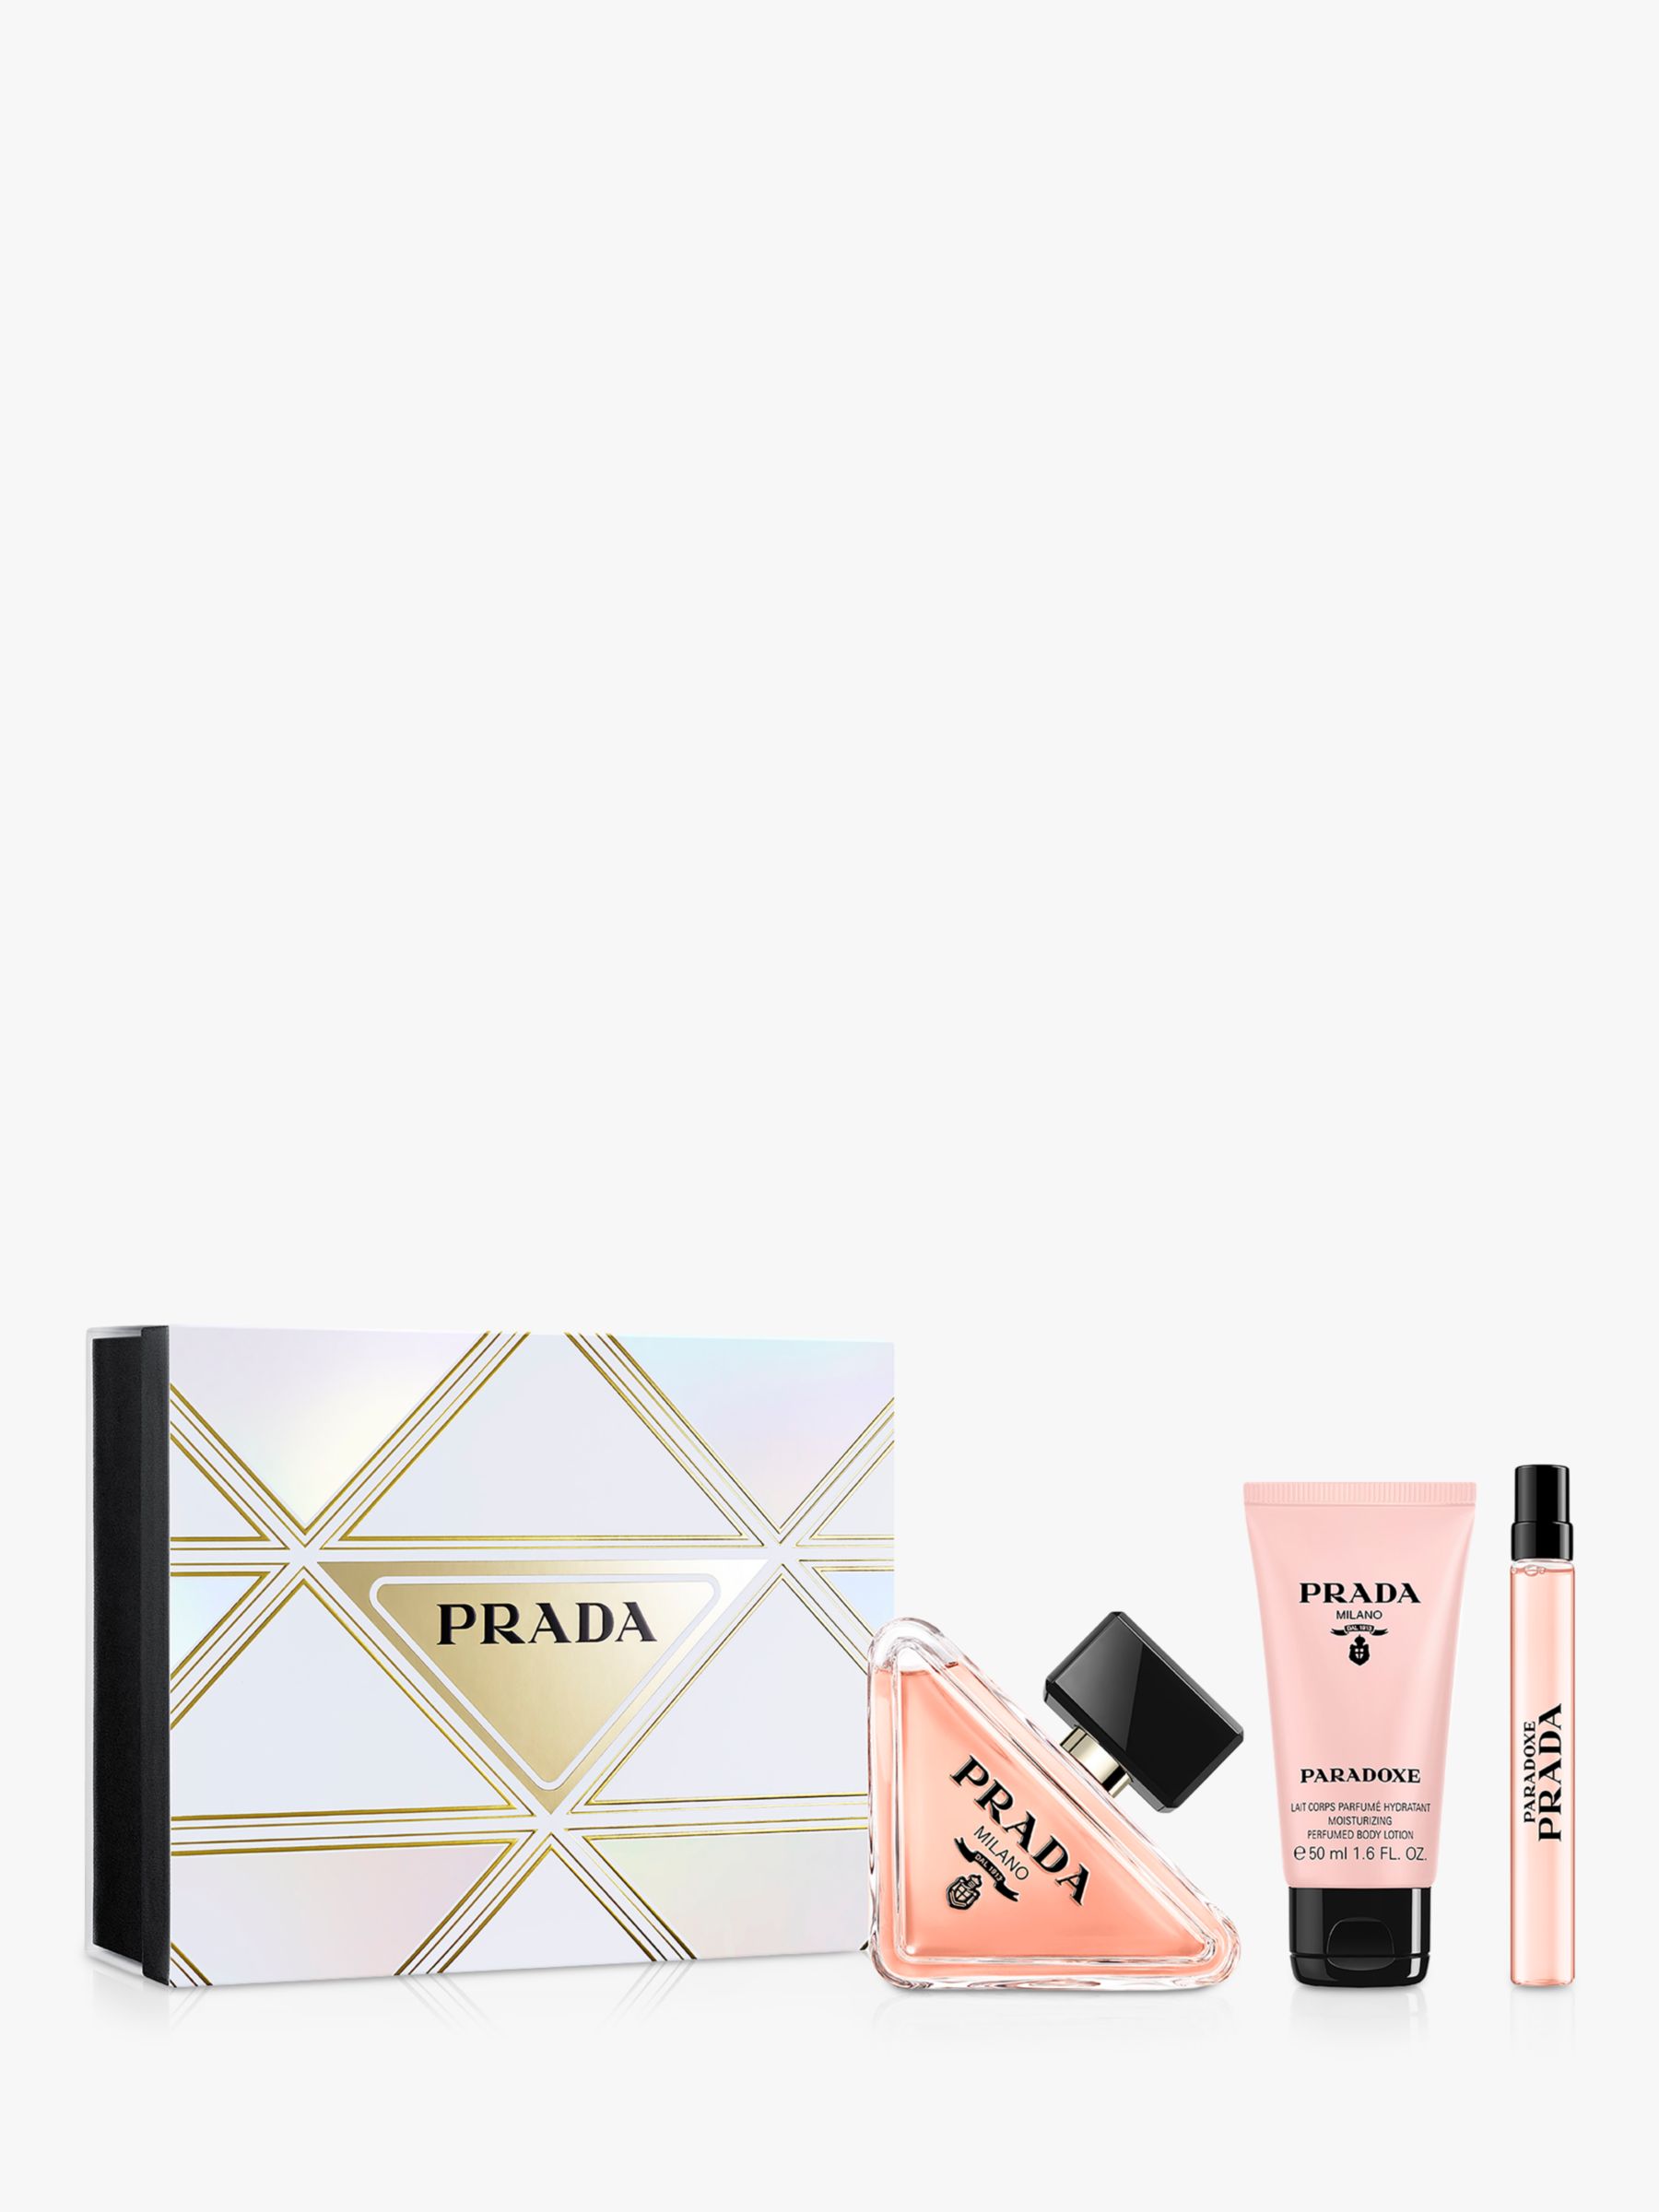 Prada Paradoxe Eau de Parfum 90ml Fragrance Gift Set